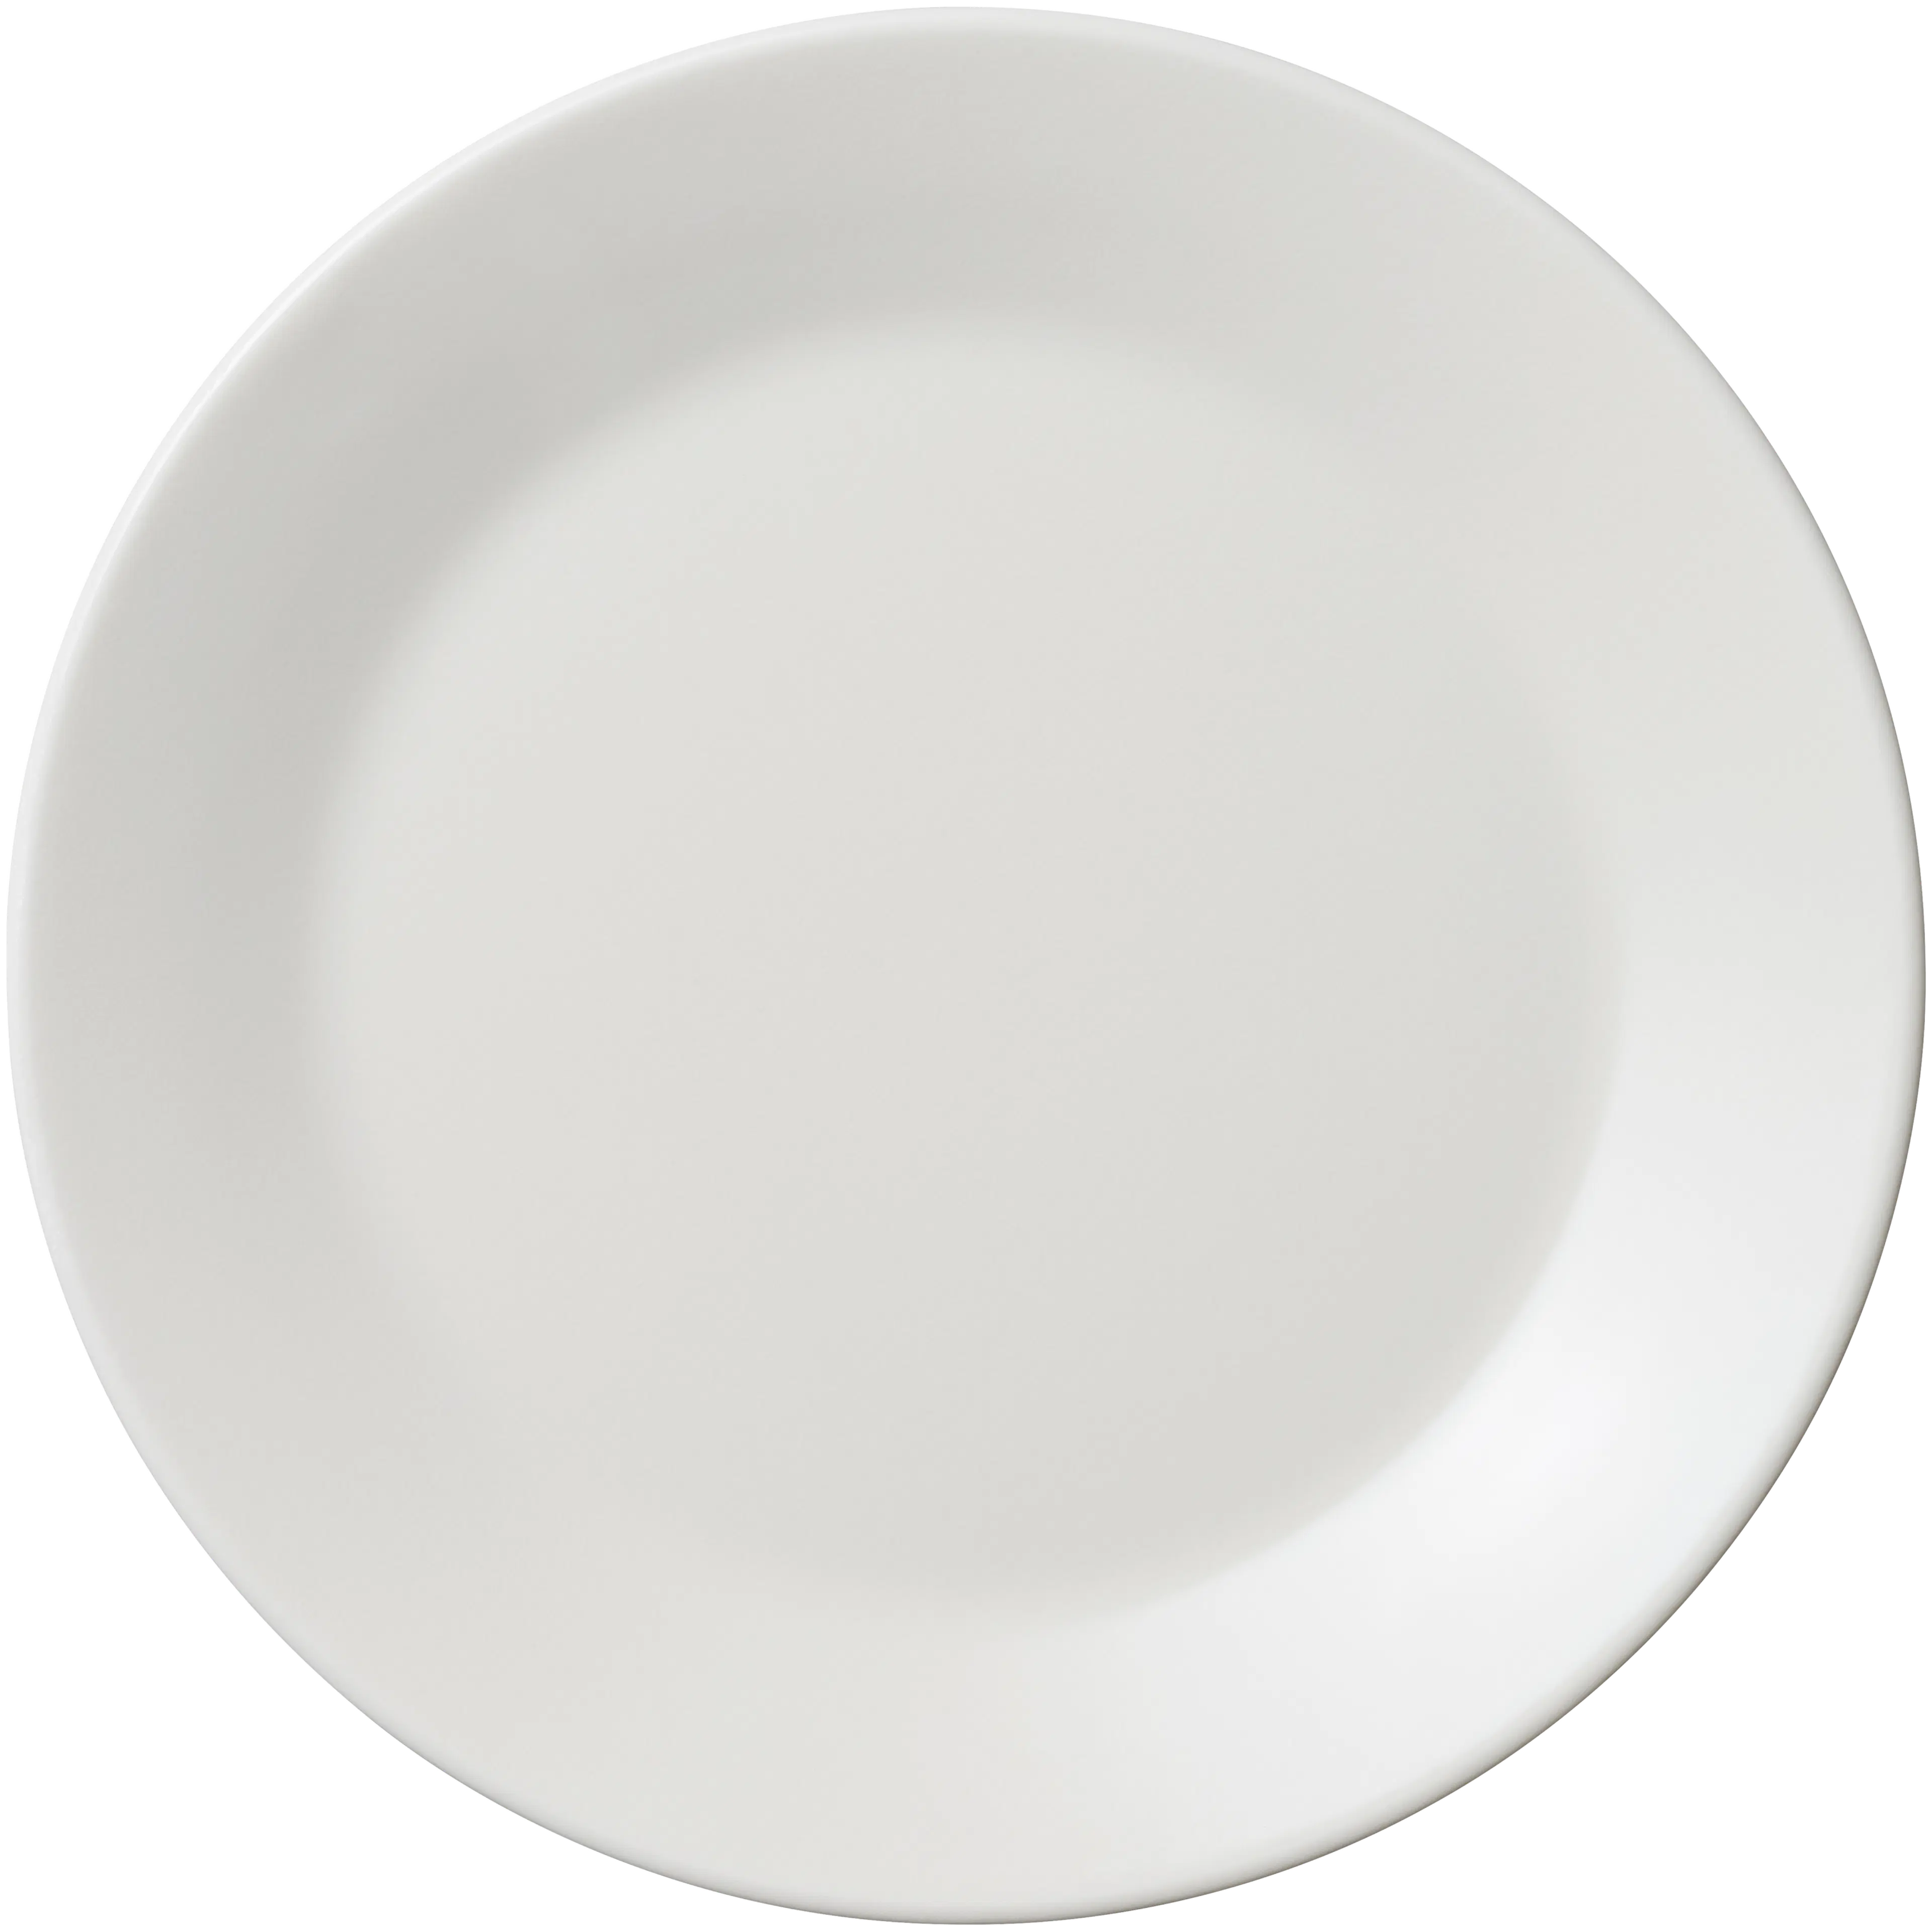 Arabia Mainio lautanen 15cm valkoinen